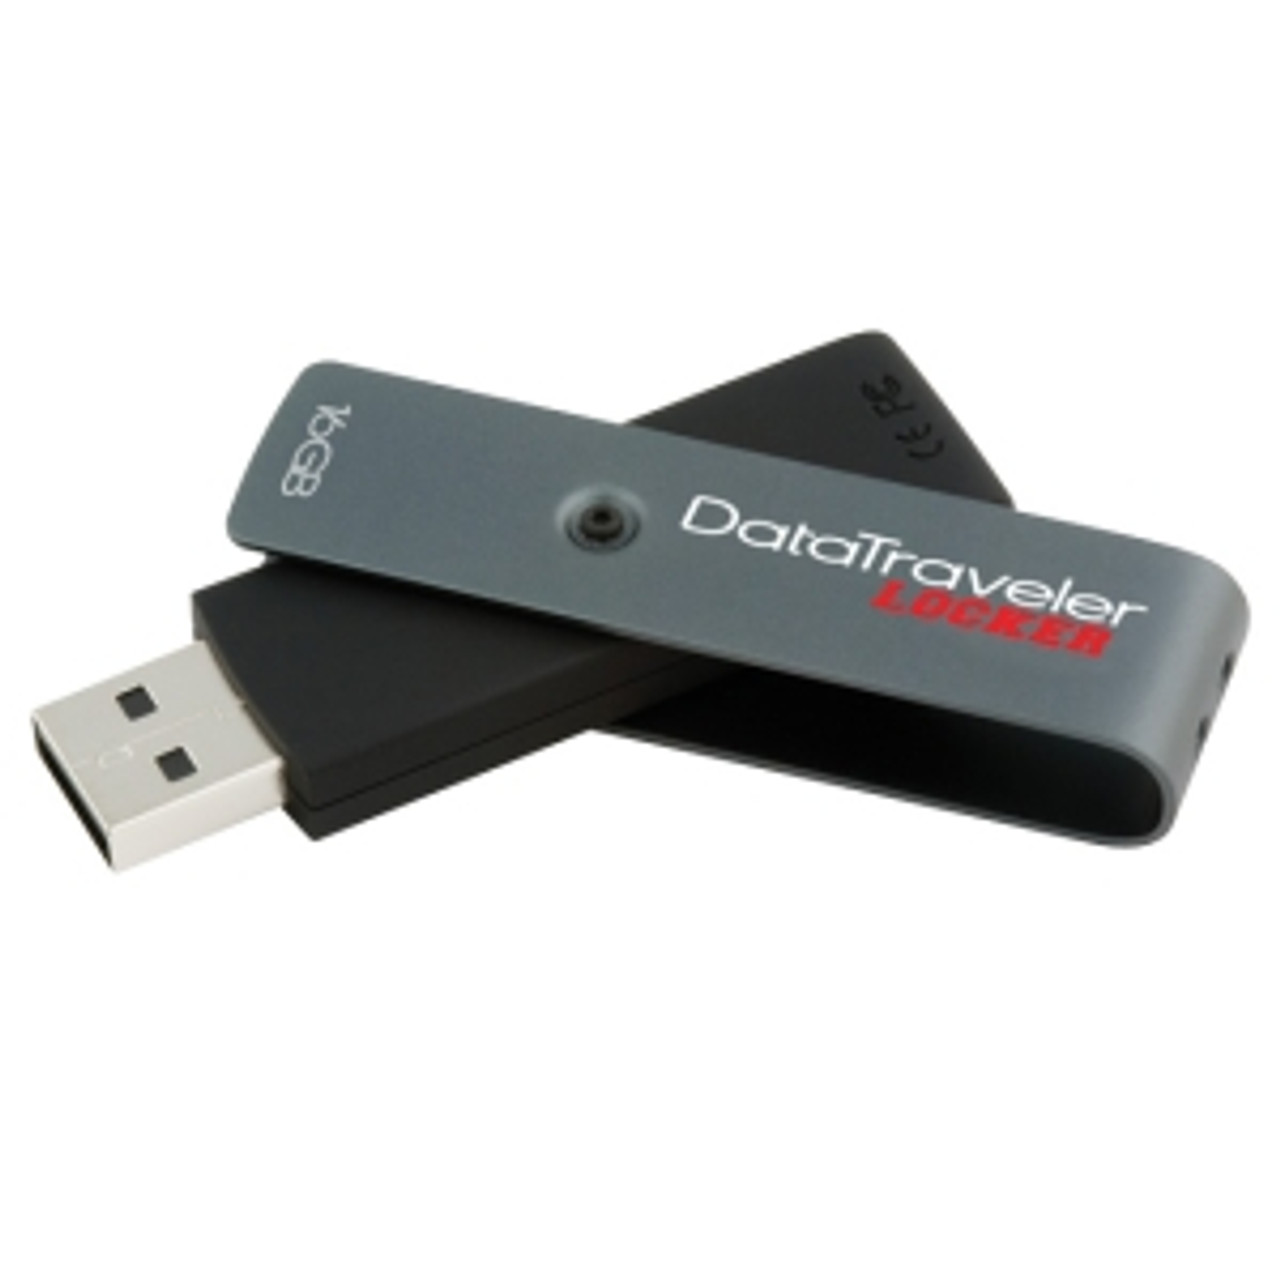 DTL+/16GB - Kingston 16GB DataTraveler Locker USB 2.0 Flash Drive - 16 GB - USB - External